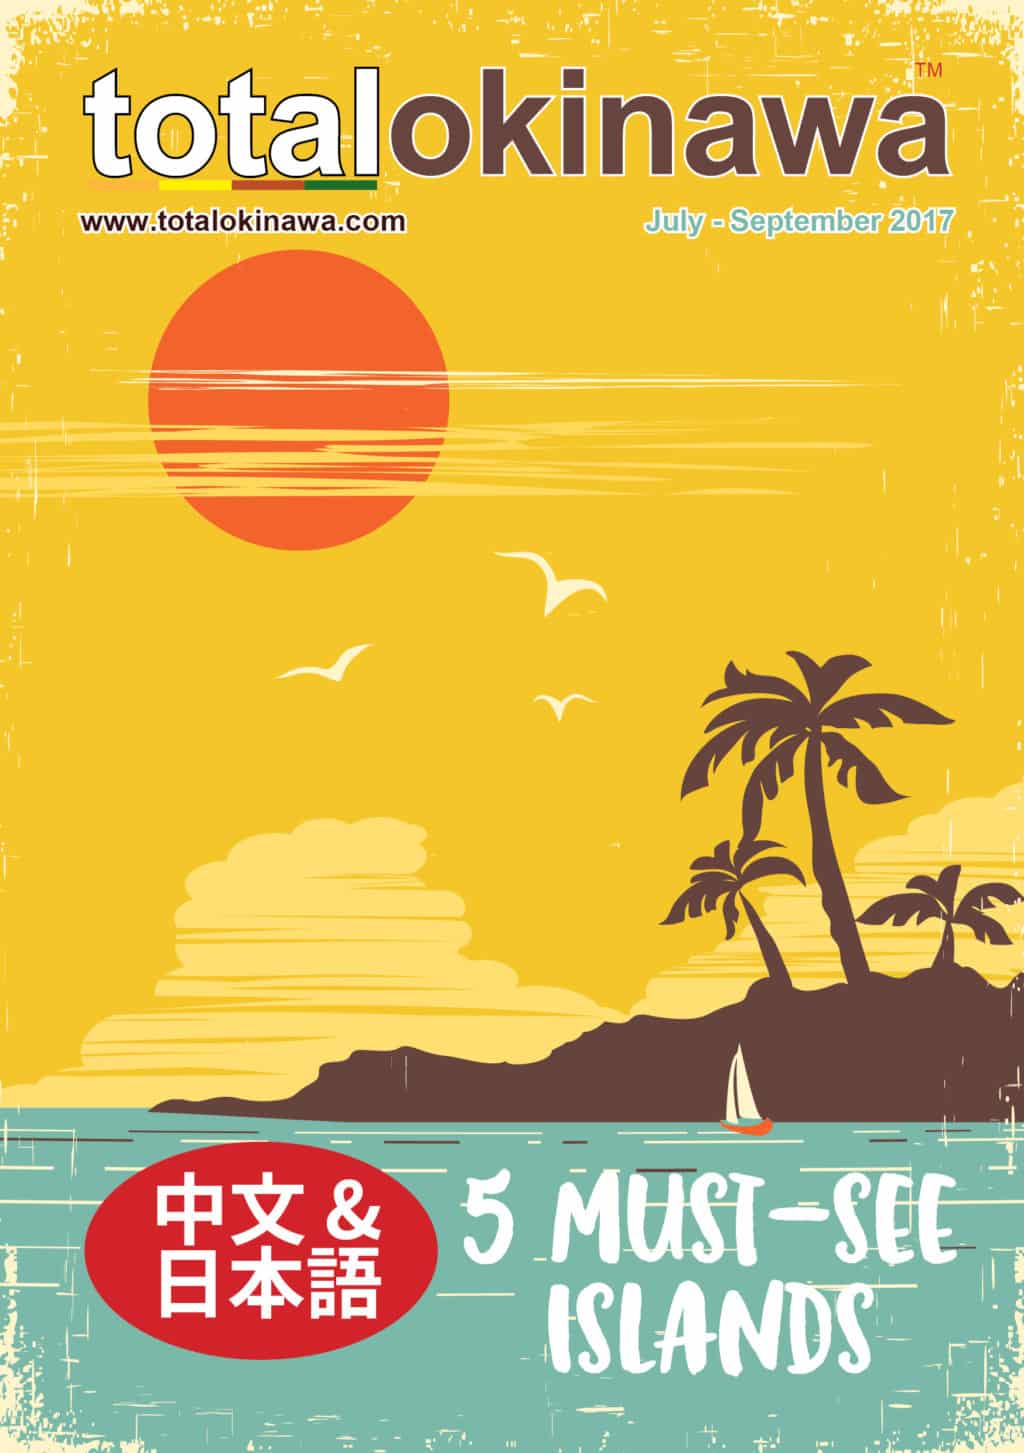 Total Okinawa Magazine Cover Apr 2018 - Live Healthy Like An Okinawan